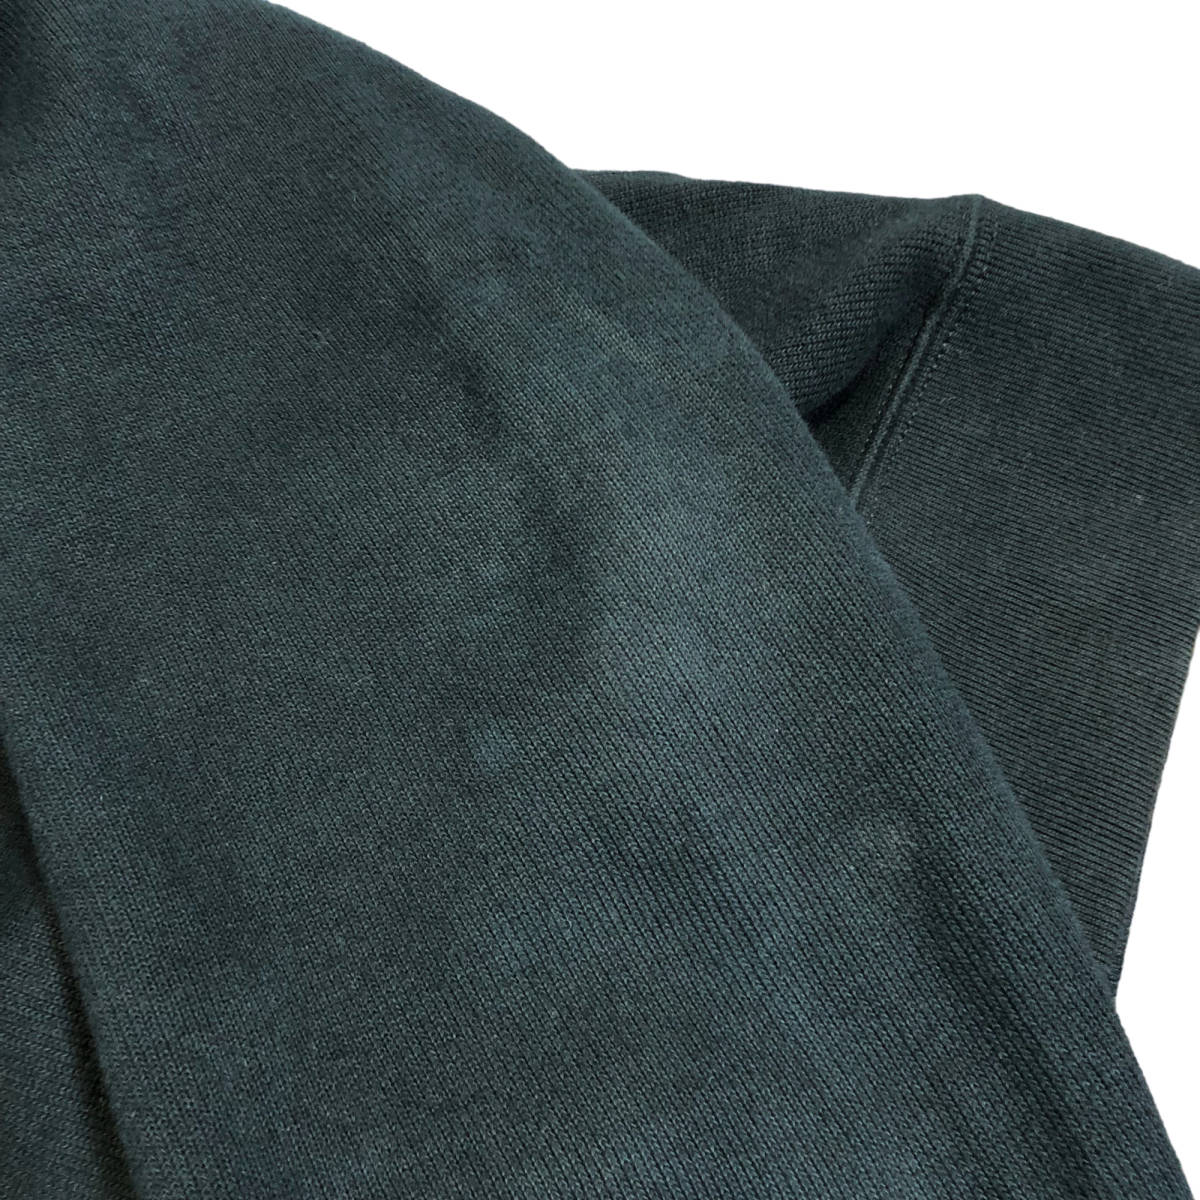 Polo by Ralph Lauren Polo bai Ralph Lauren шаль цвет тренировочный L чёрный po колено вышивка мужской A27